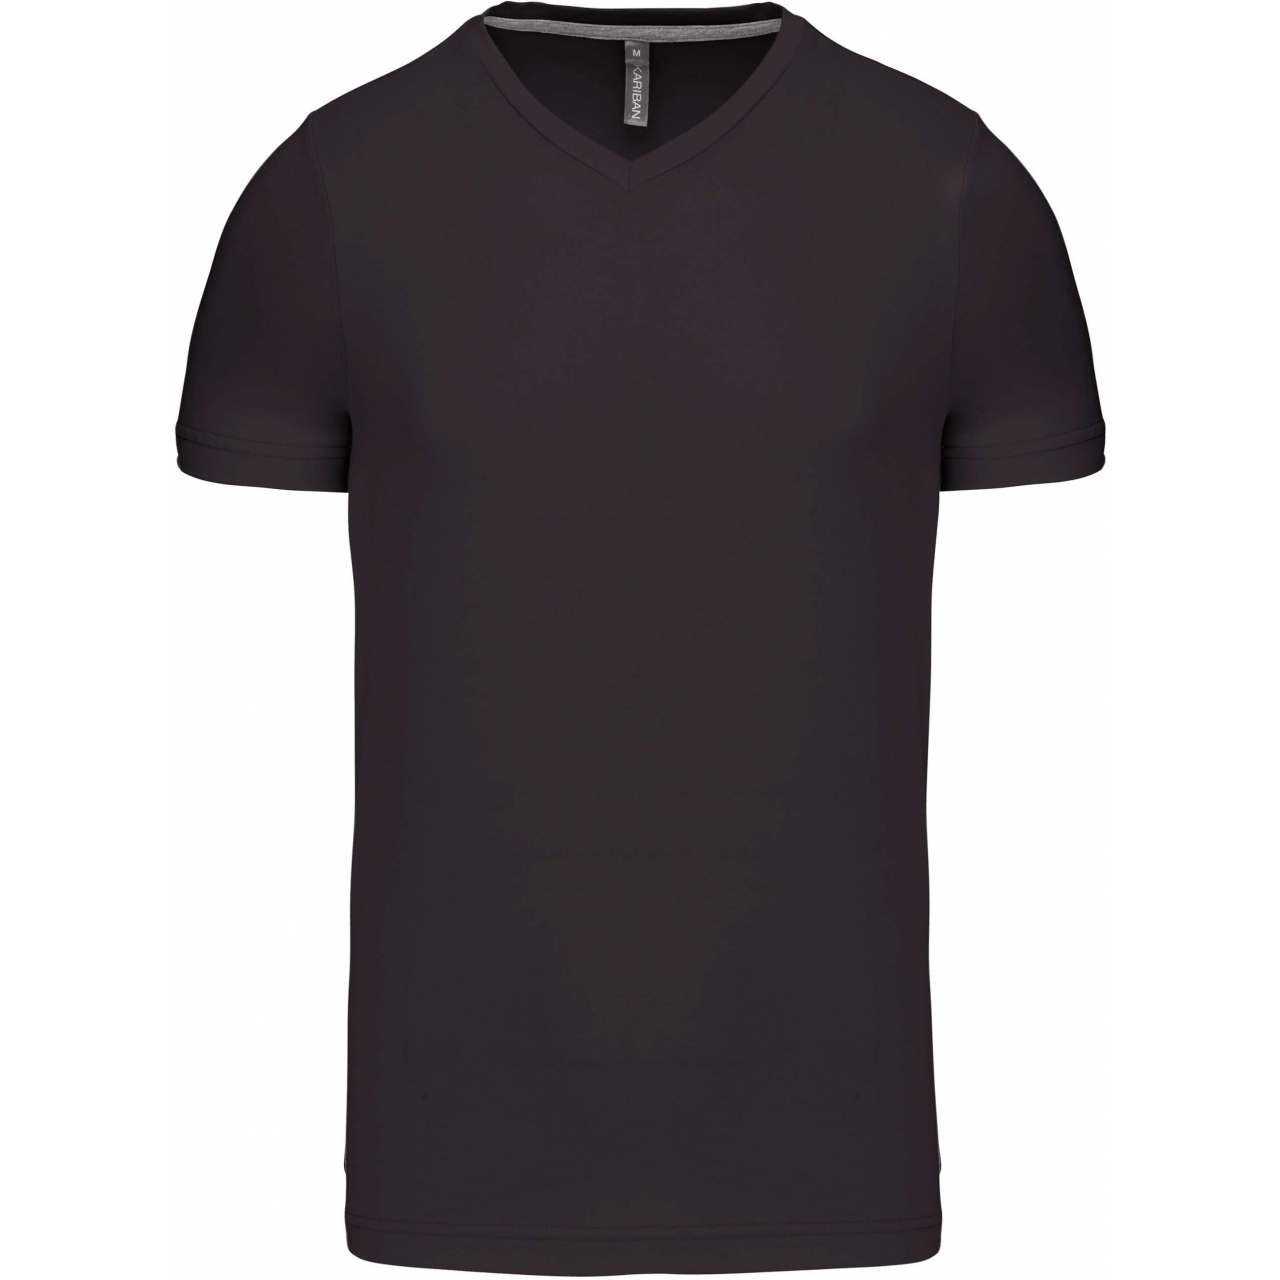 Pánské tričko Kariban krátký rukáv V-neck - tmavě šedé, XL